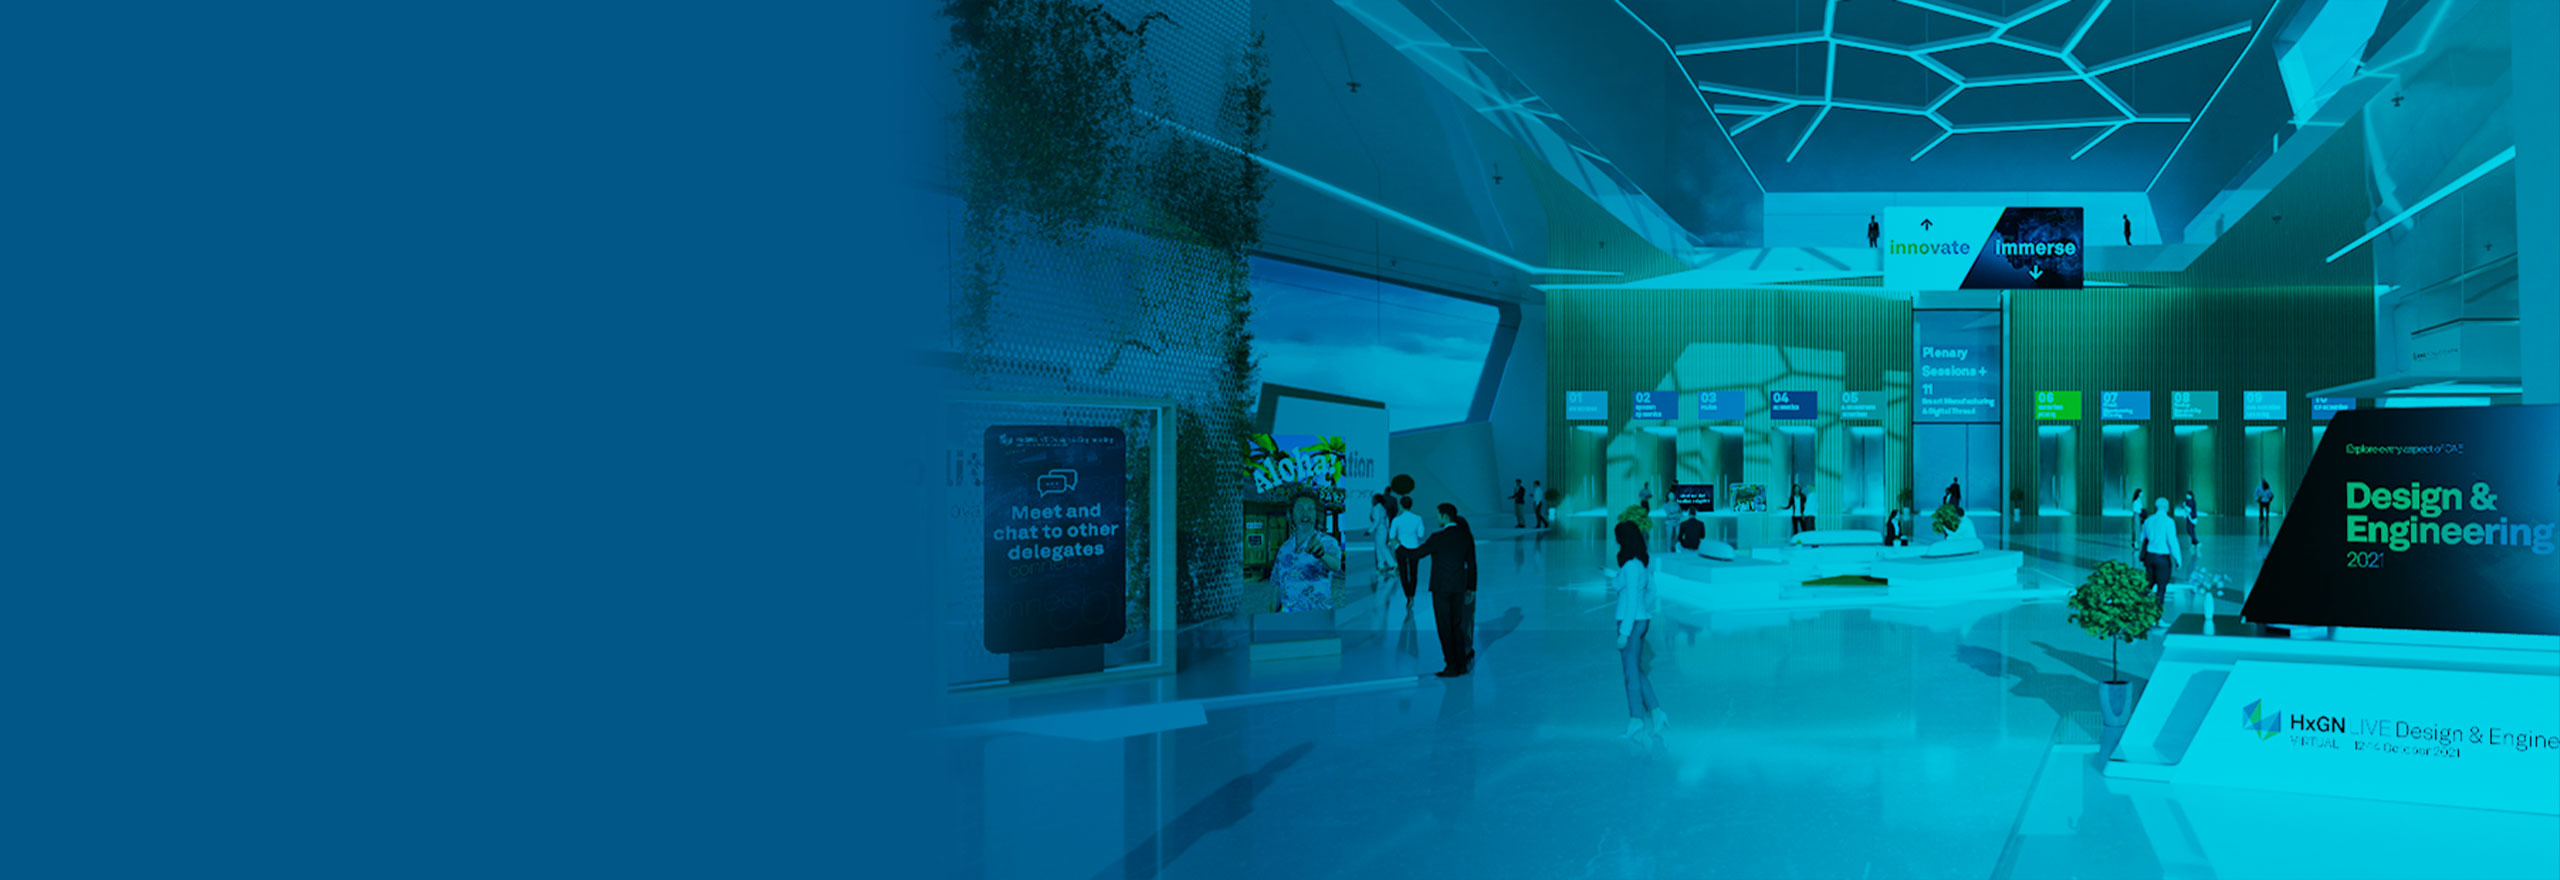 Image du pavillon virtuel HxGN LIVE Design & Engineering 2021 montrant plusieurs portails et écrans